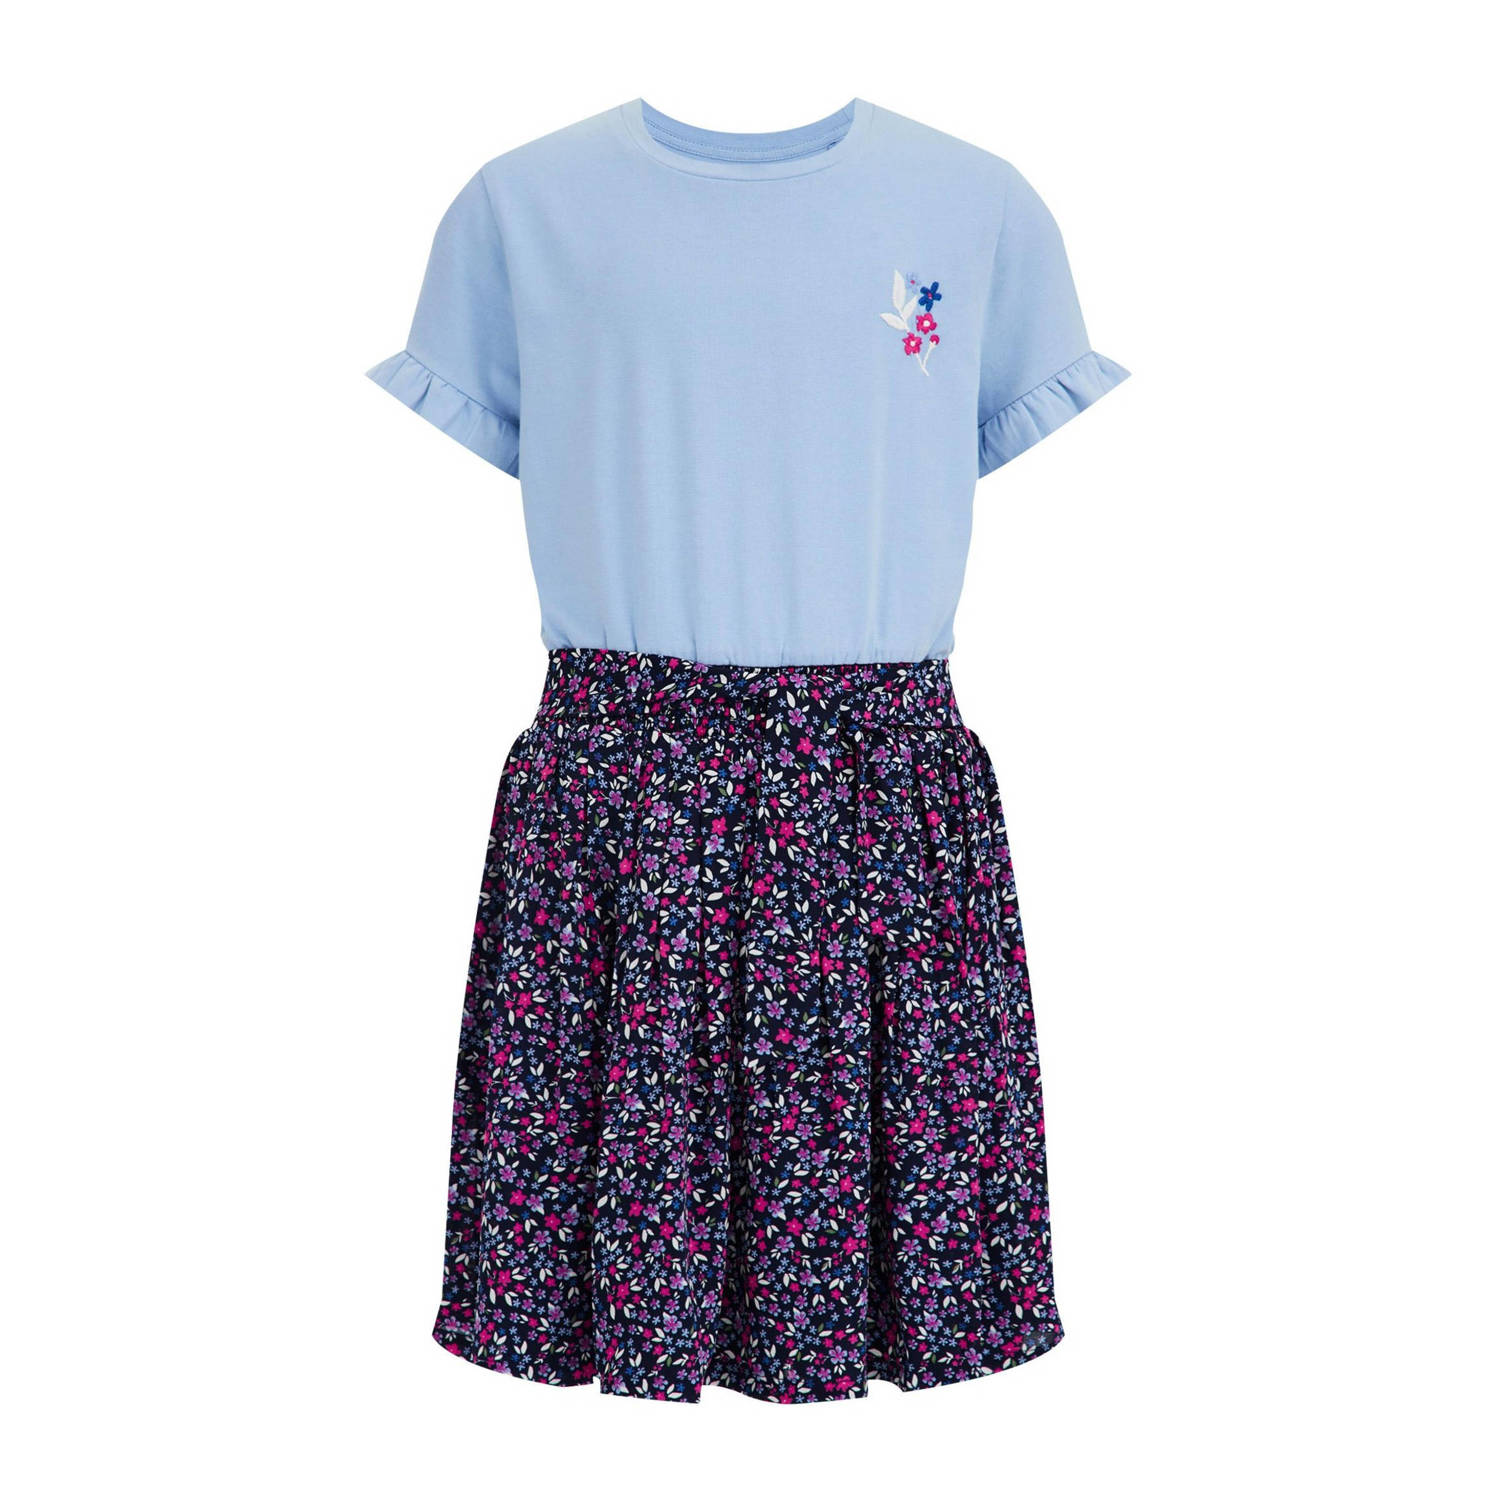 WE Fashion jurk met all over print blauw roze Meisjes Stretchkatoen Ronde hals 110 116